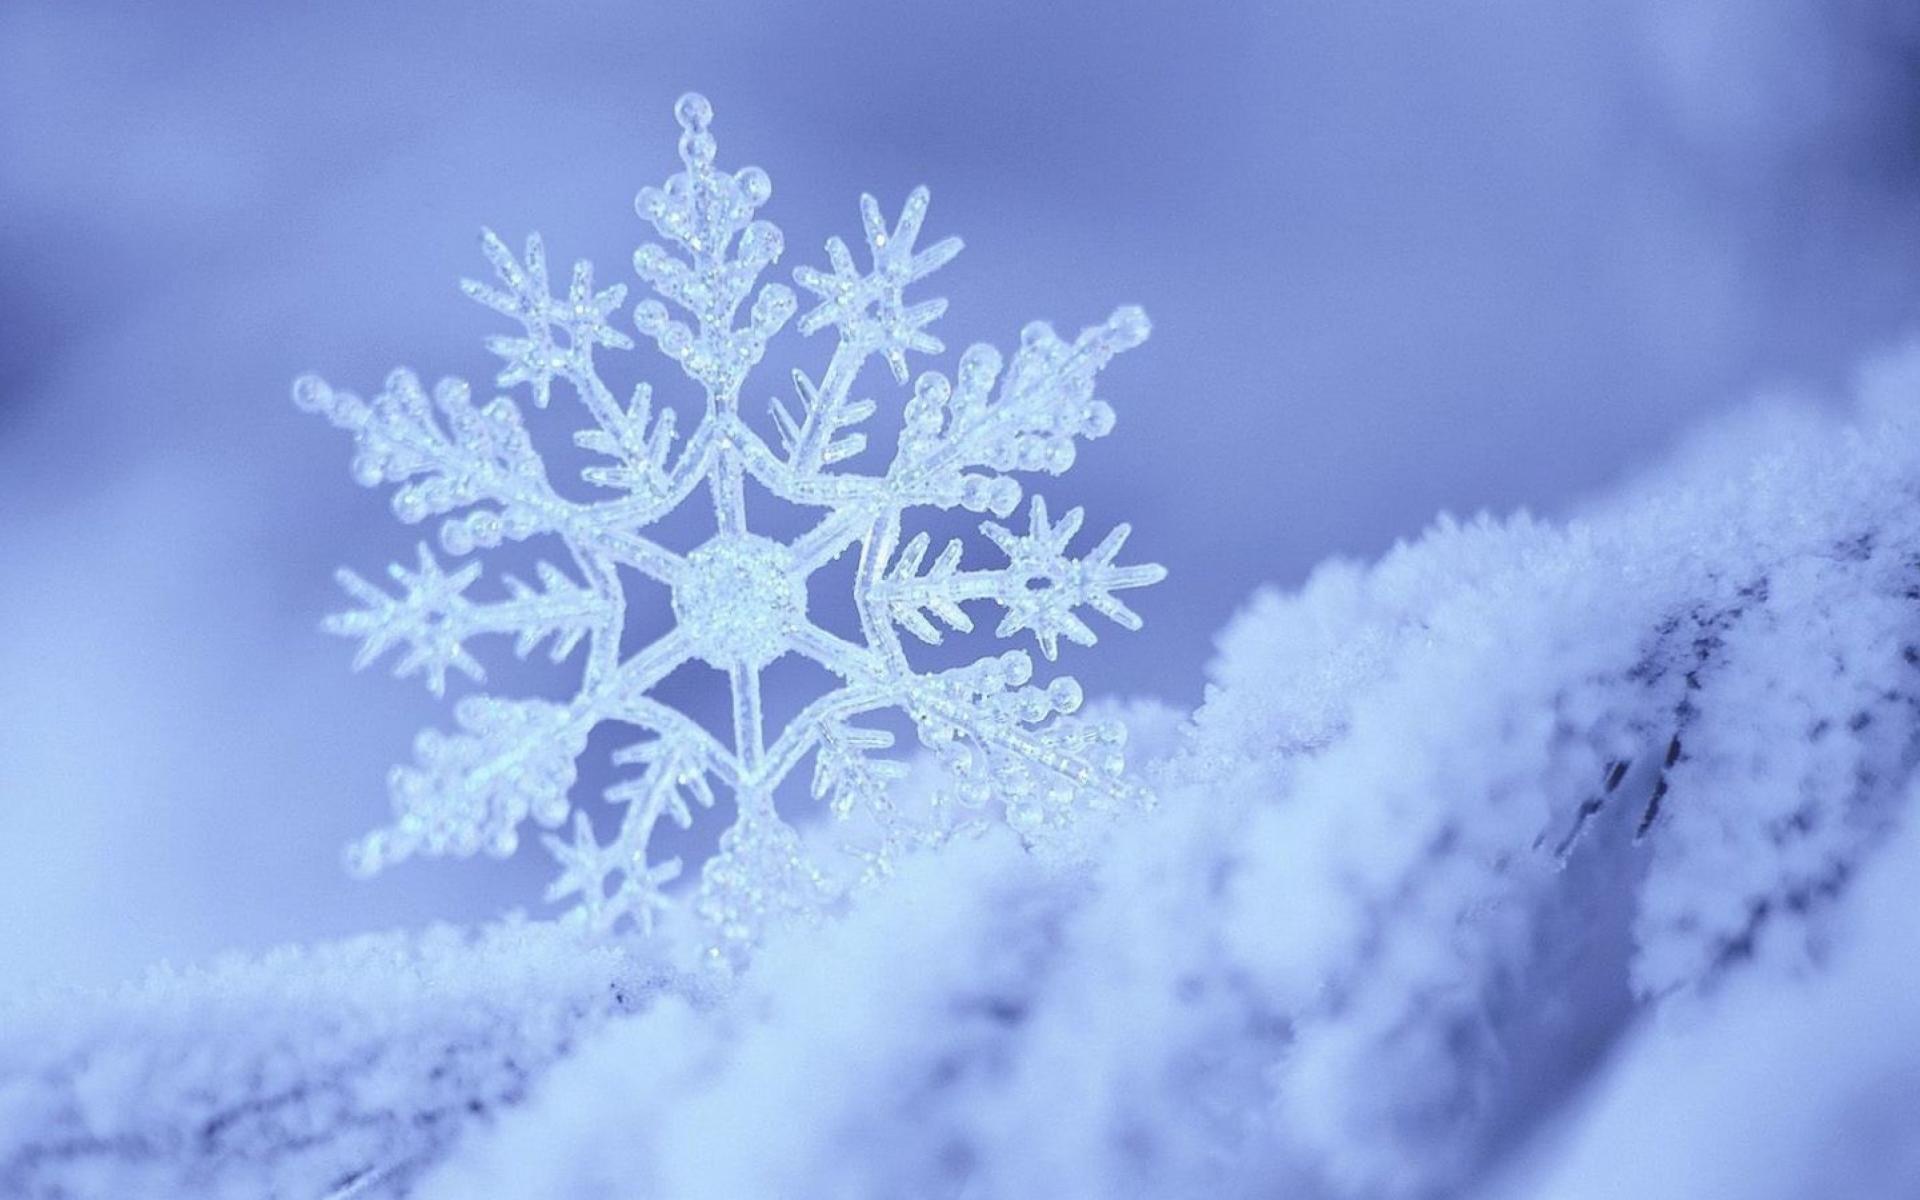 Beautiful snowflake wallpaper Desktop. Snowflake wallpaper, Snowflake photography, Snowflakes